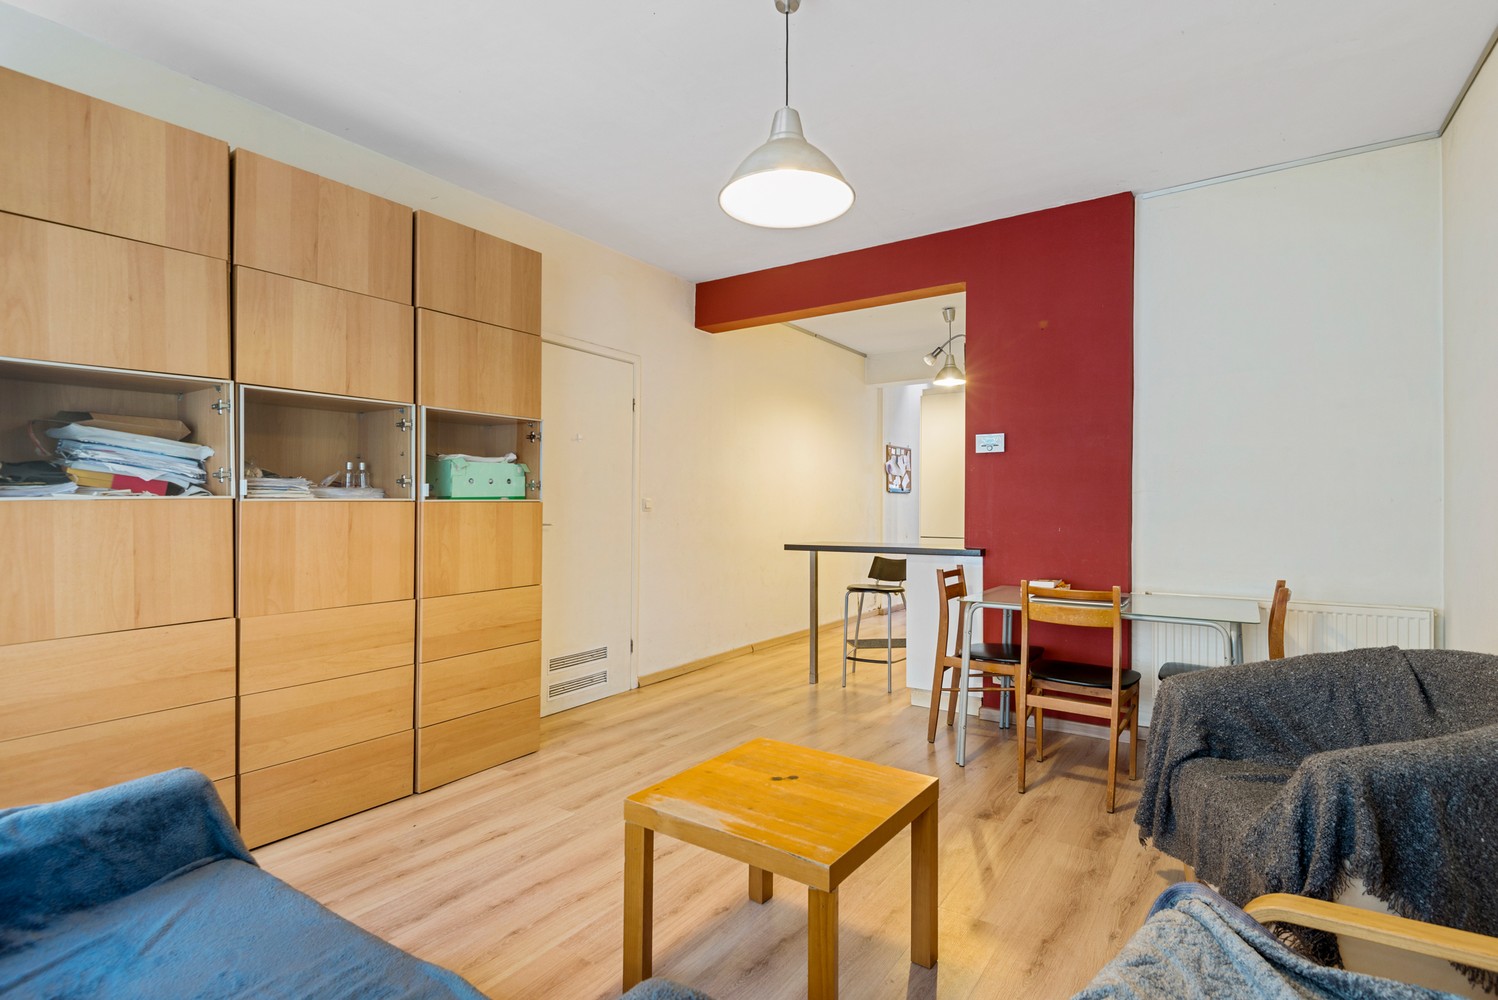 Gelijkvloers appartement met 1 slaapkamer te koop in Mechelen afbeelding 7